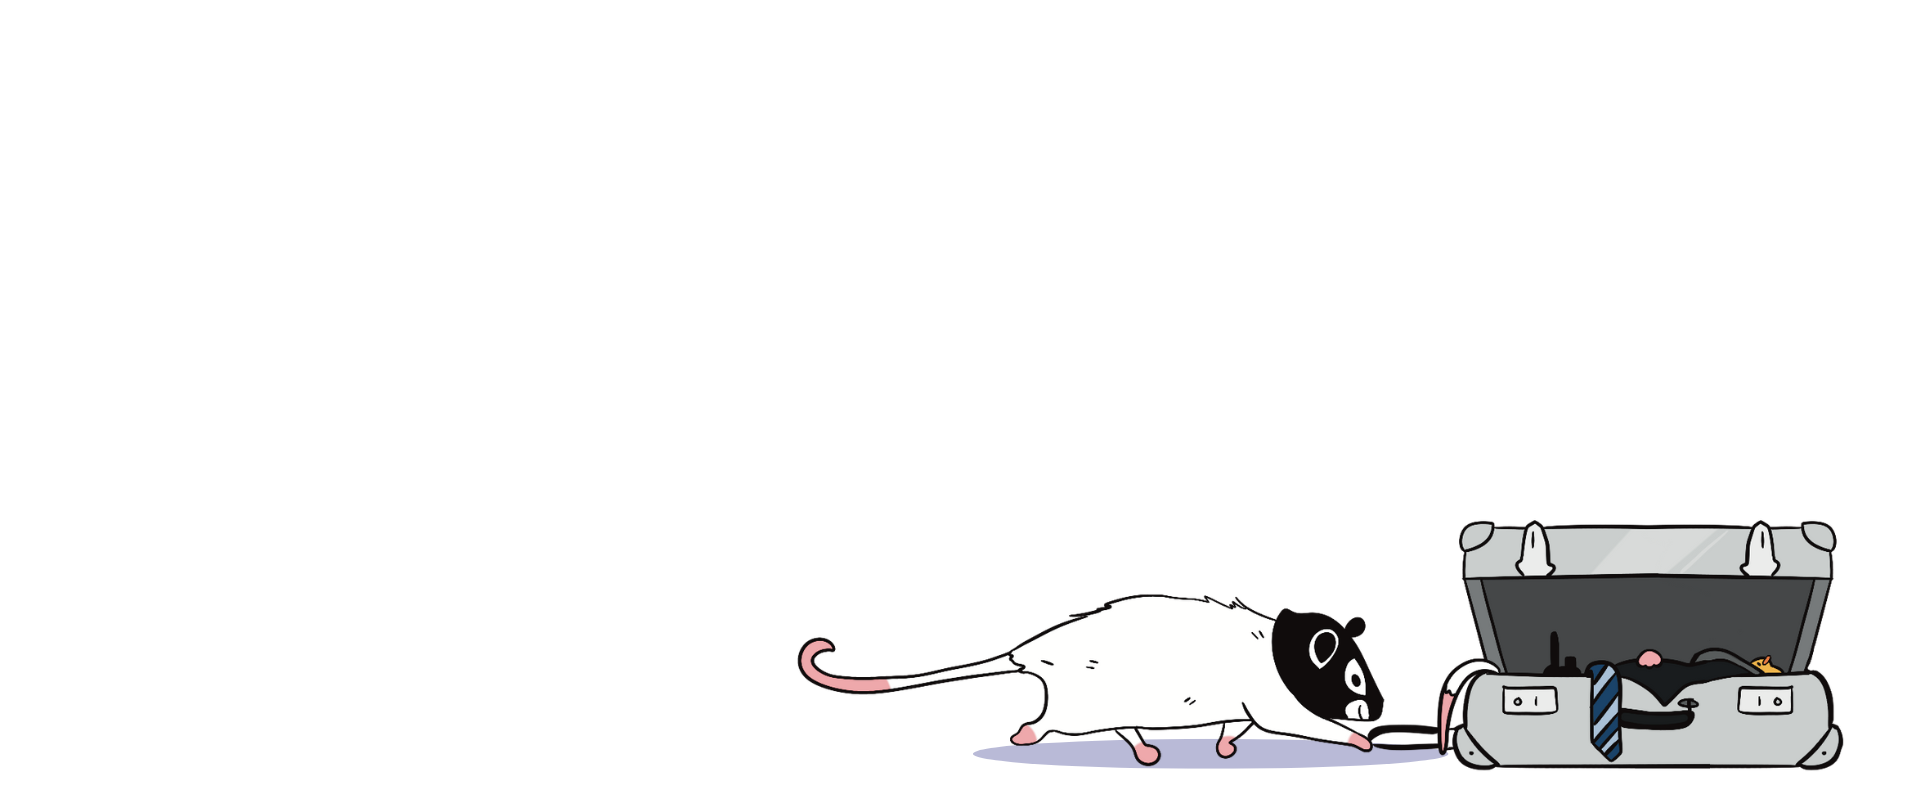 Mission Opossumble